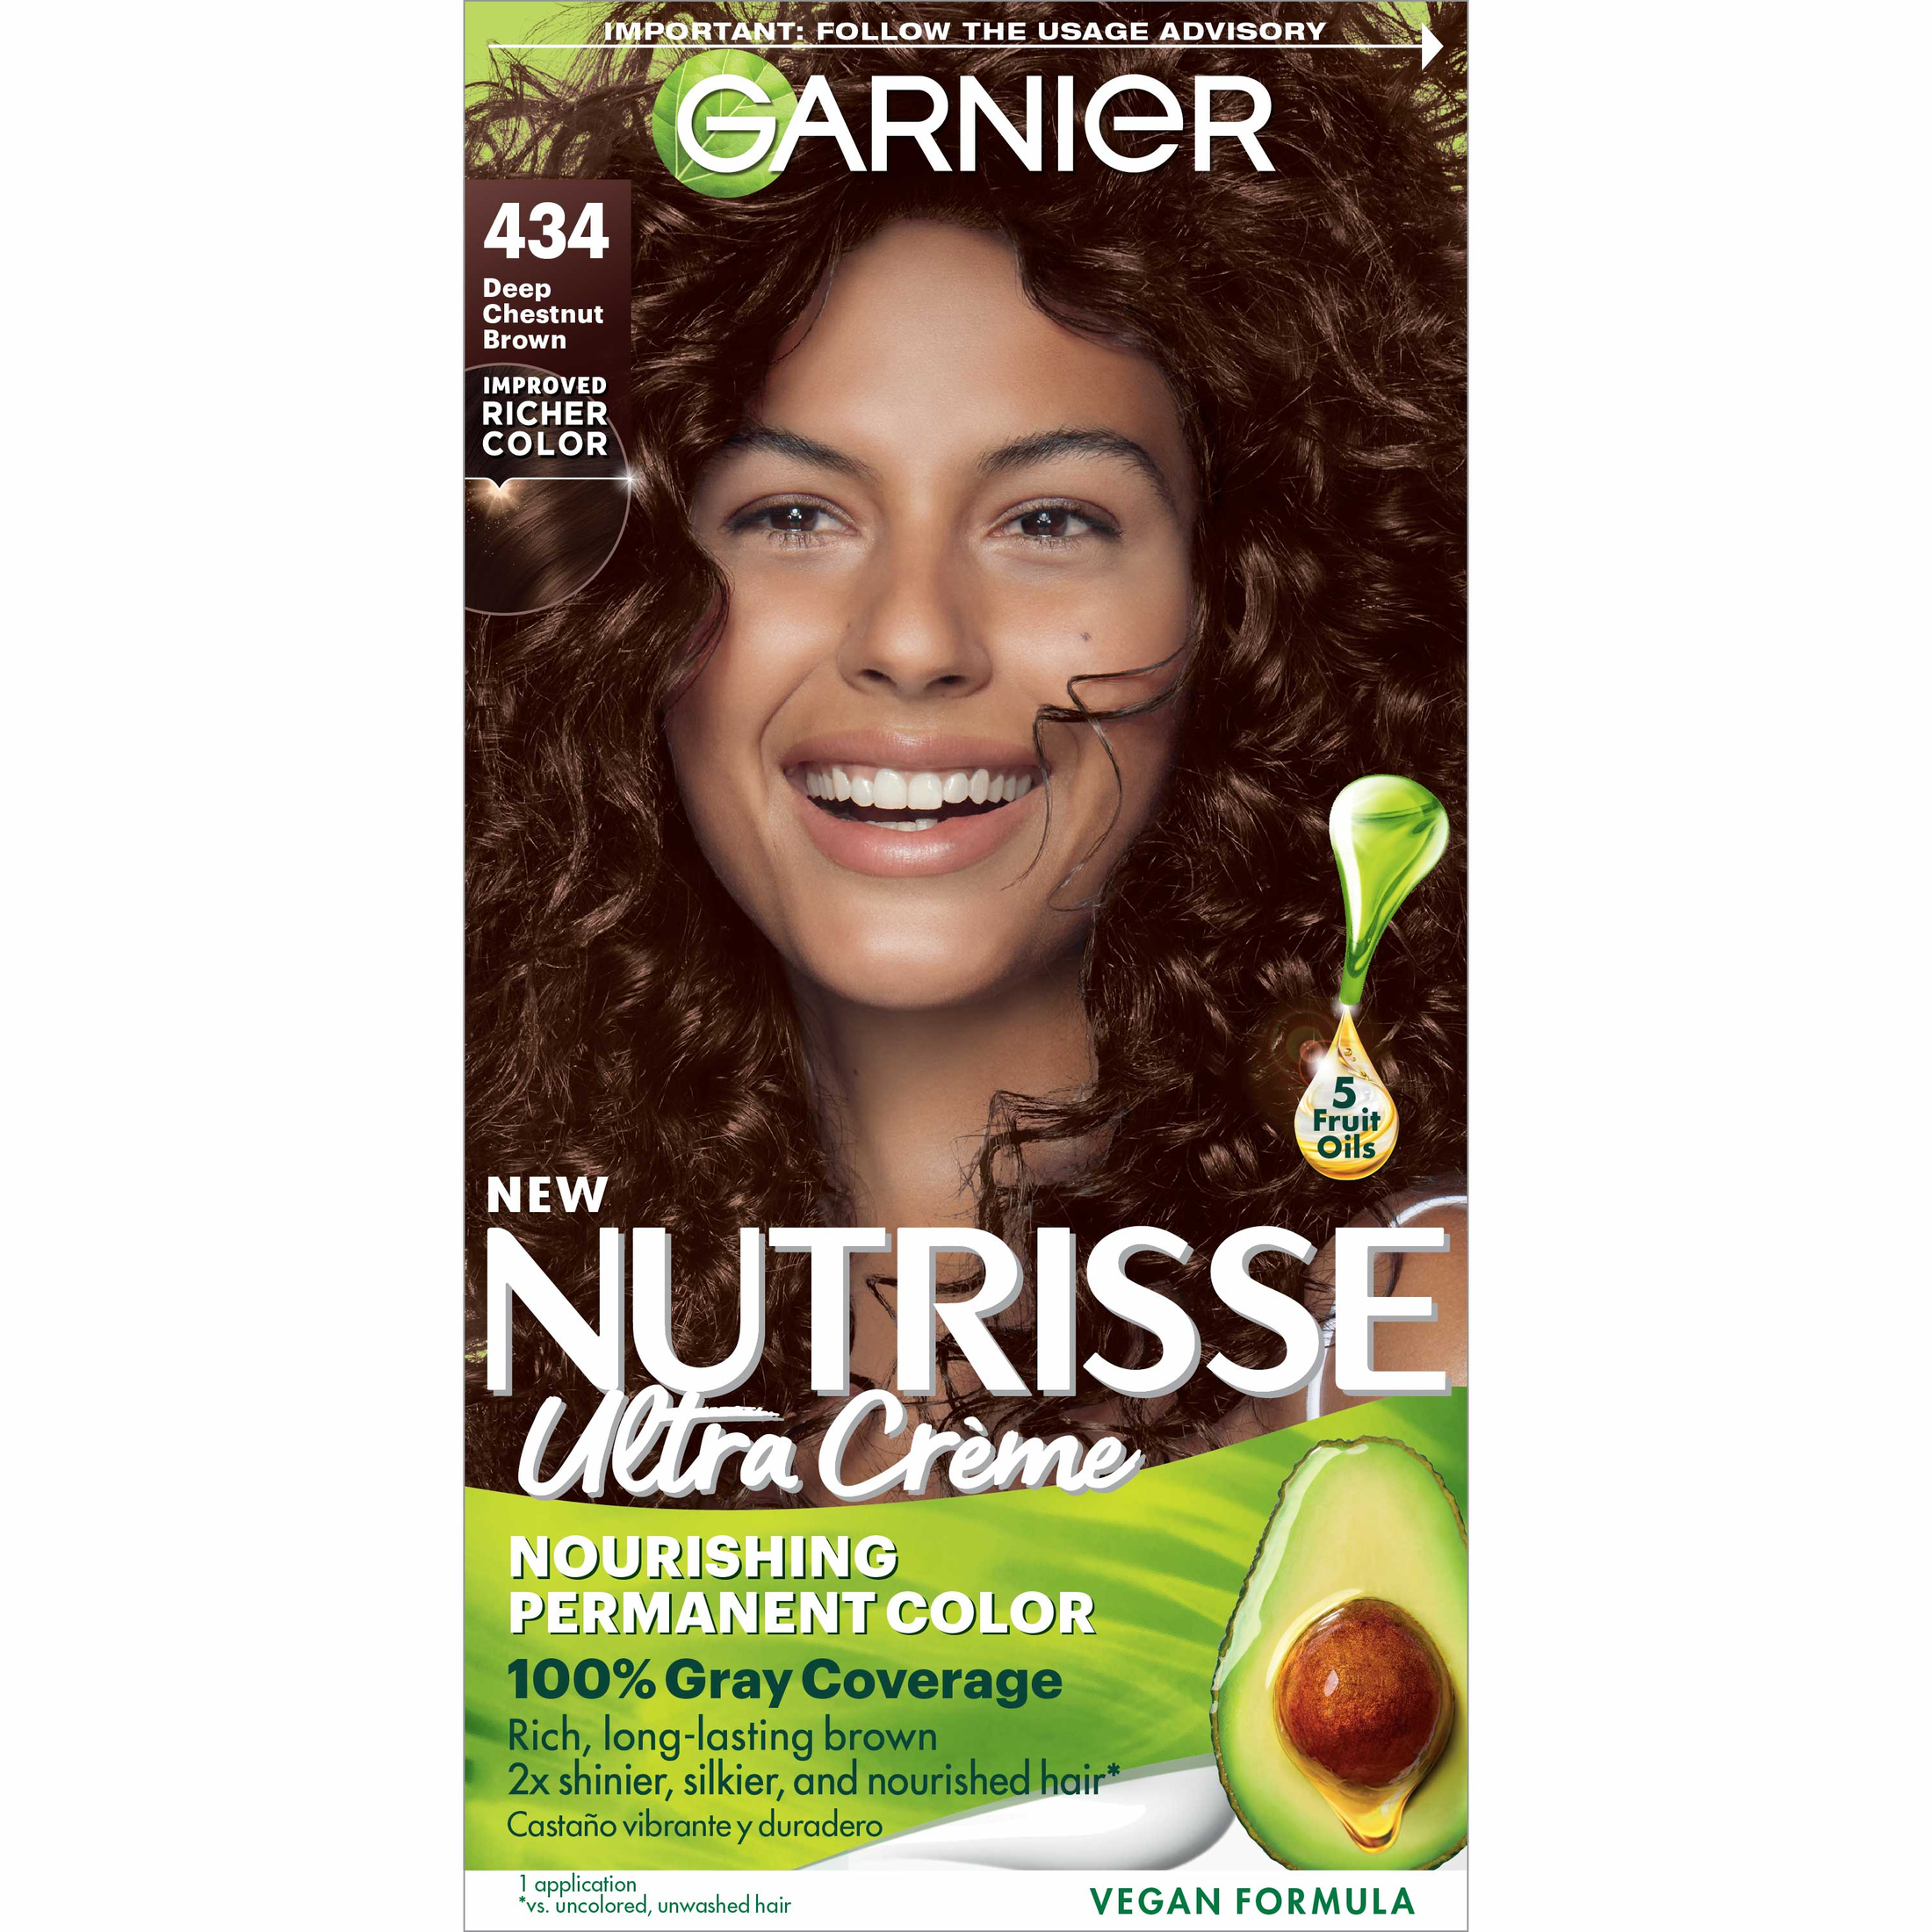 Garnier Nutrisse Nourishing Hair Color Creme, 434 Deep Chestnut Brown - image 1 of 11